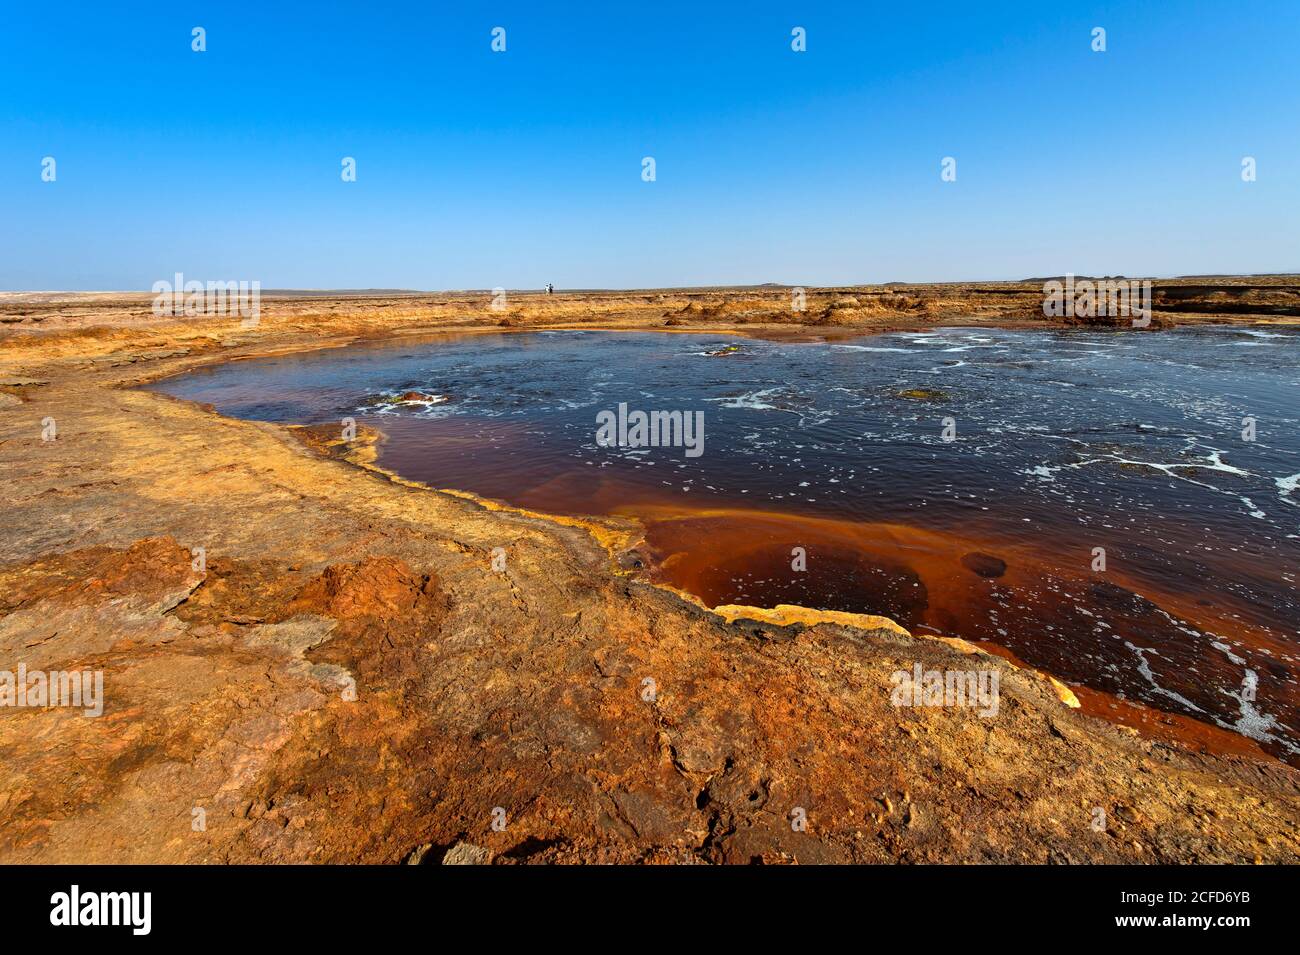 Der Gaet'ale Teich, auch ein Ölteich, mit Hyperalinwasser, Dallol Geothermie, Hamadela, Danakil Depression, Afar Dreieck, Äthiopien Stockfoto